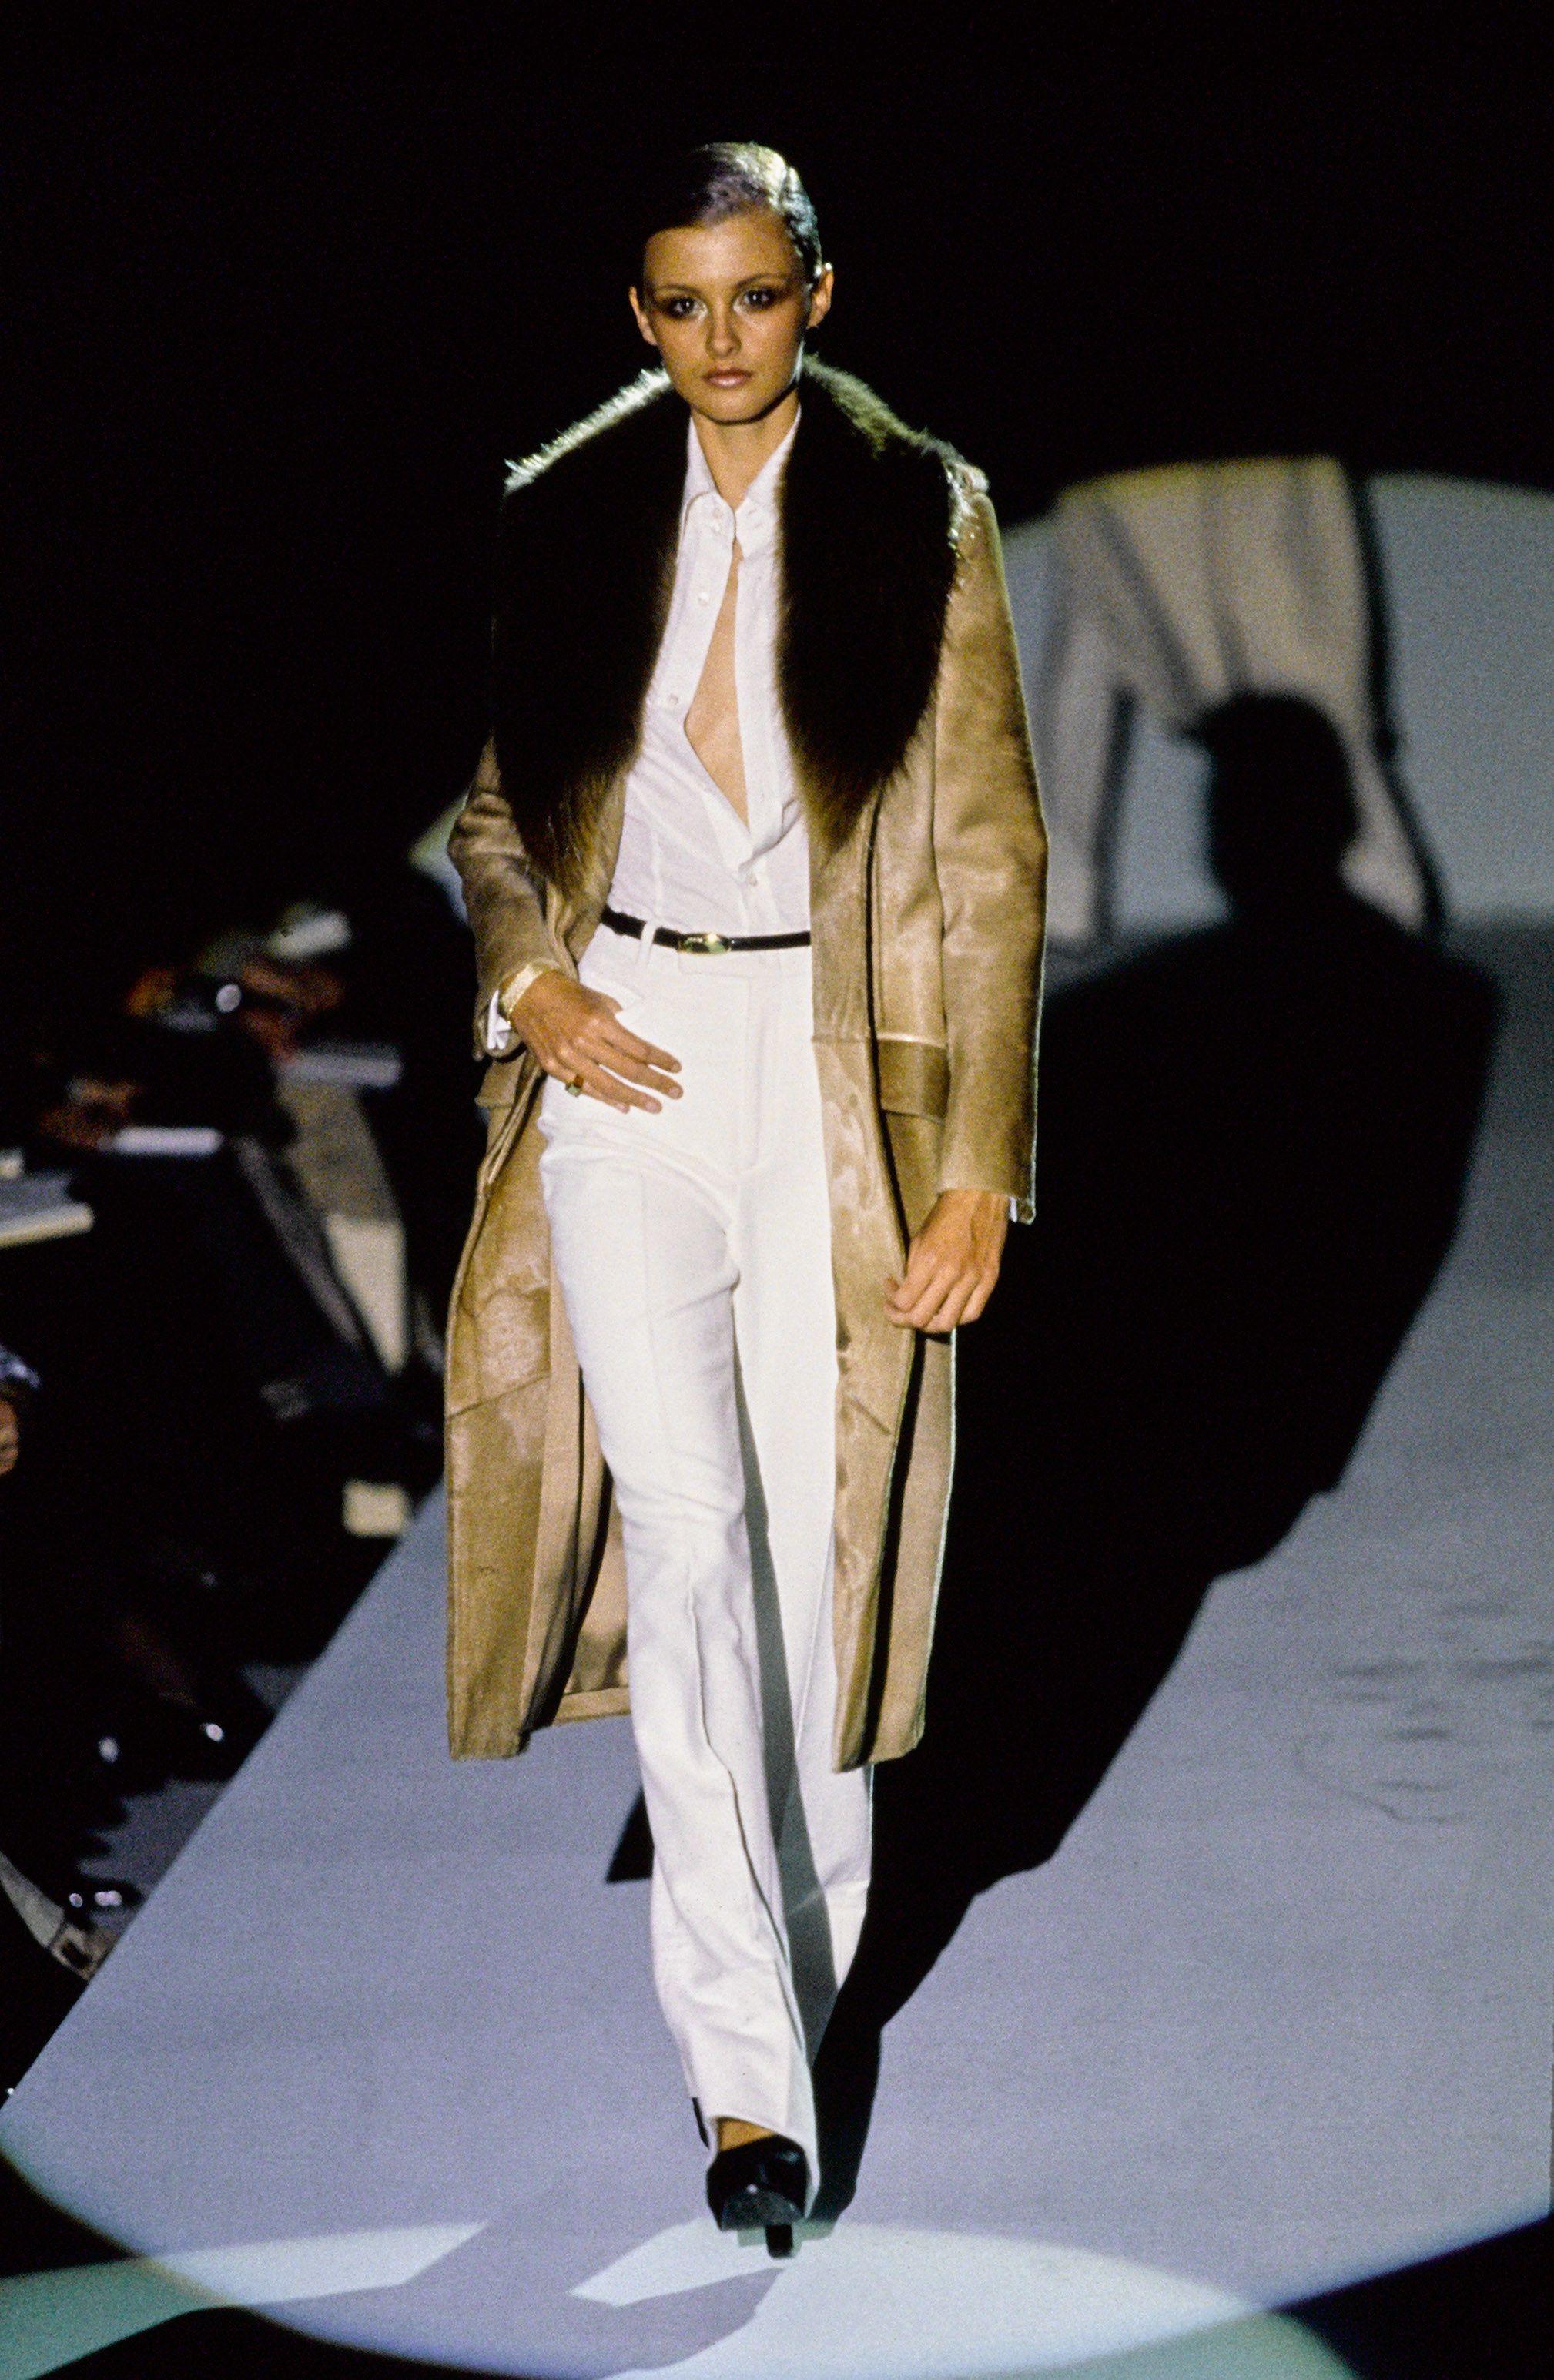 F/W Runway 1996 Tom Ford für Gucci Pelzmantel aus Leder 
Selten und ikonisch! Ein Muss für Sammler!
Kein Größenetikett (möglicherweise handelt es sich um ein Muster vom Laufsteg), ca. Größe S.
Rindsleder, Pelz, Lederbesatz.
Maße: Schultern 16 Zoll,